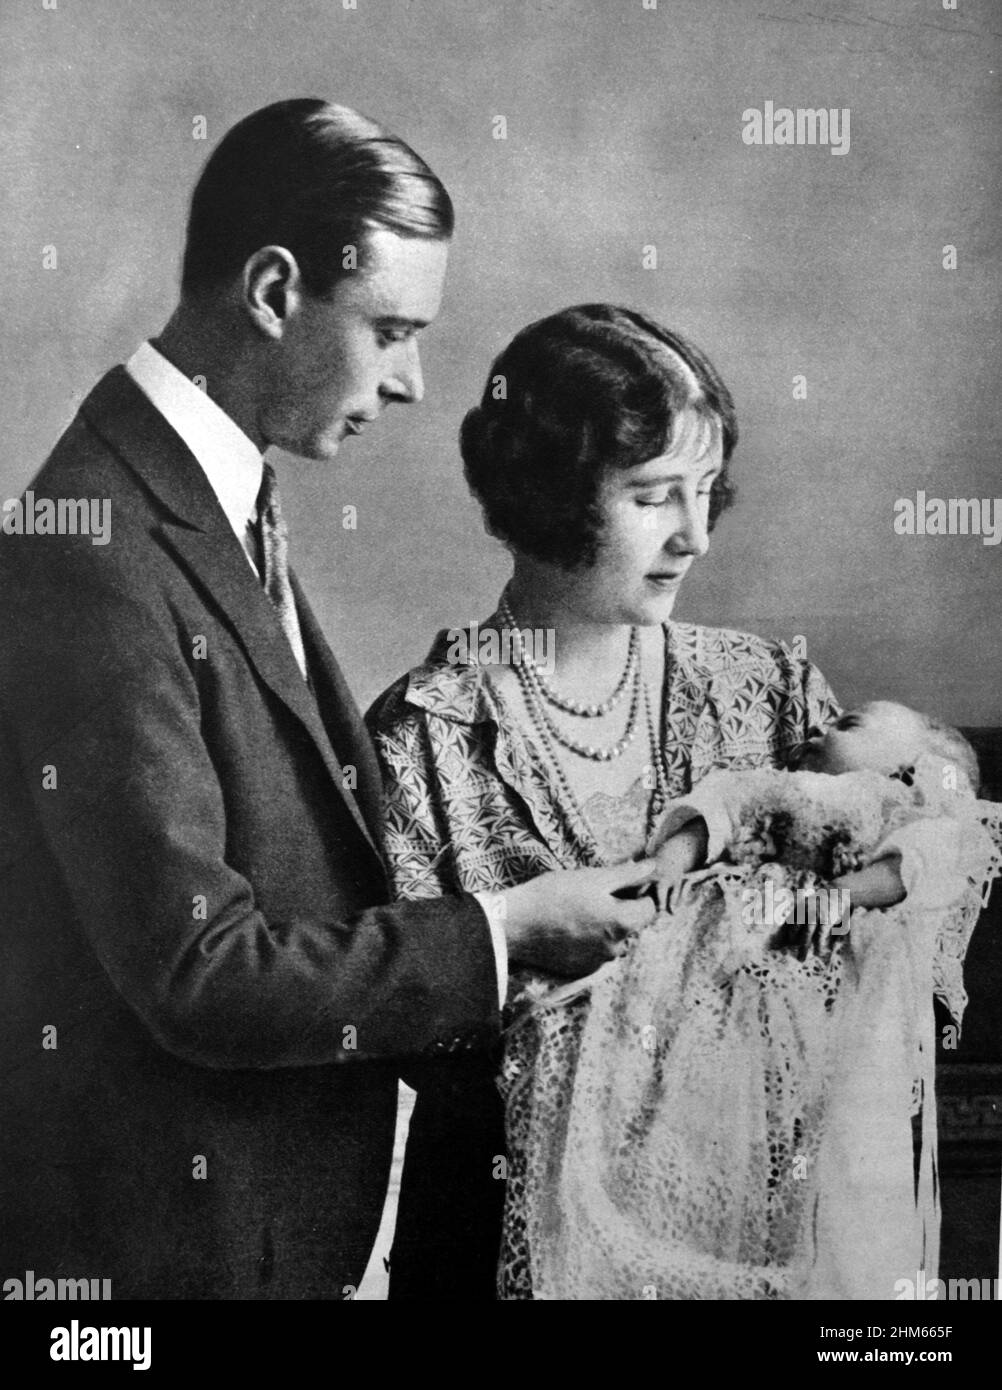 Ritratto di famiglia del duca e della duchessa di York (più tardi re Giorgio VI e regina Elisabetta) con la neonata principessa (più tardi regina Elisabetta II). 1926 Foto Stock